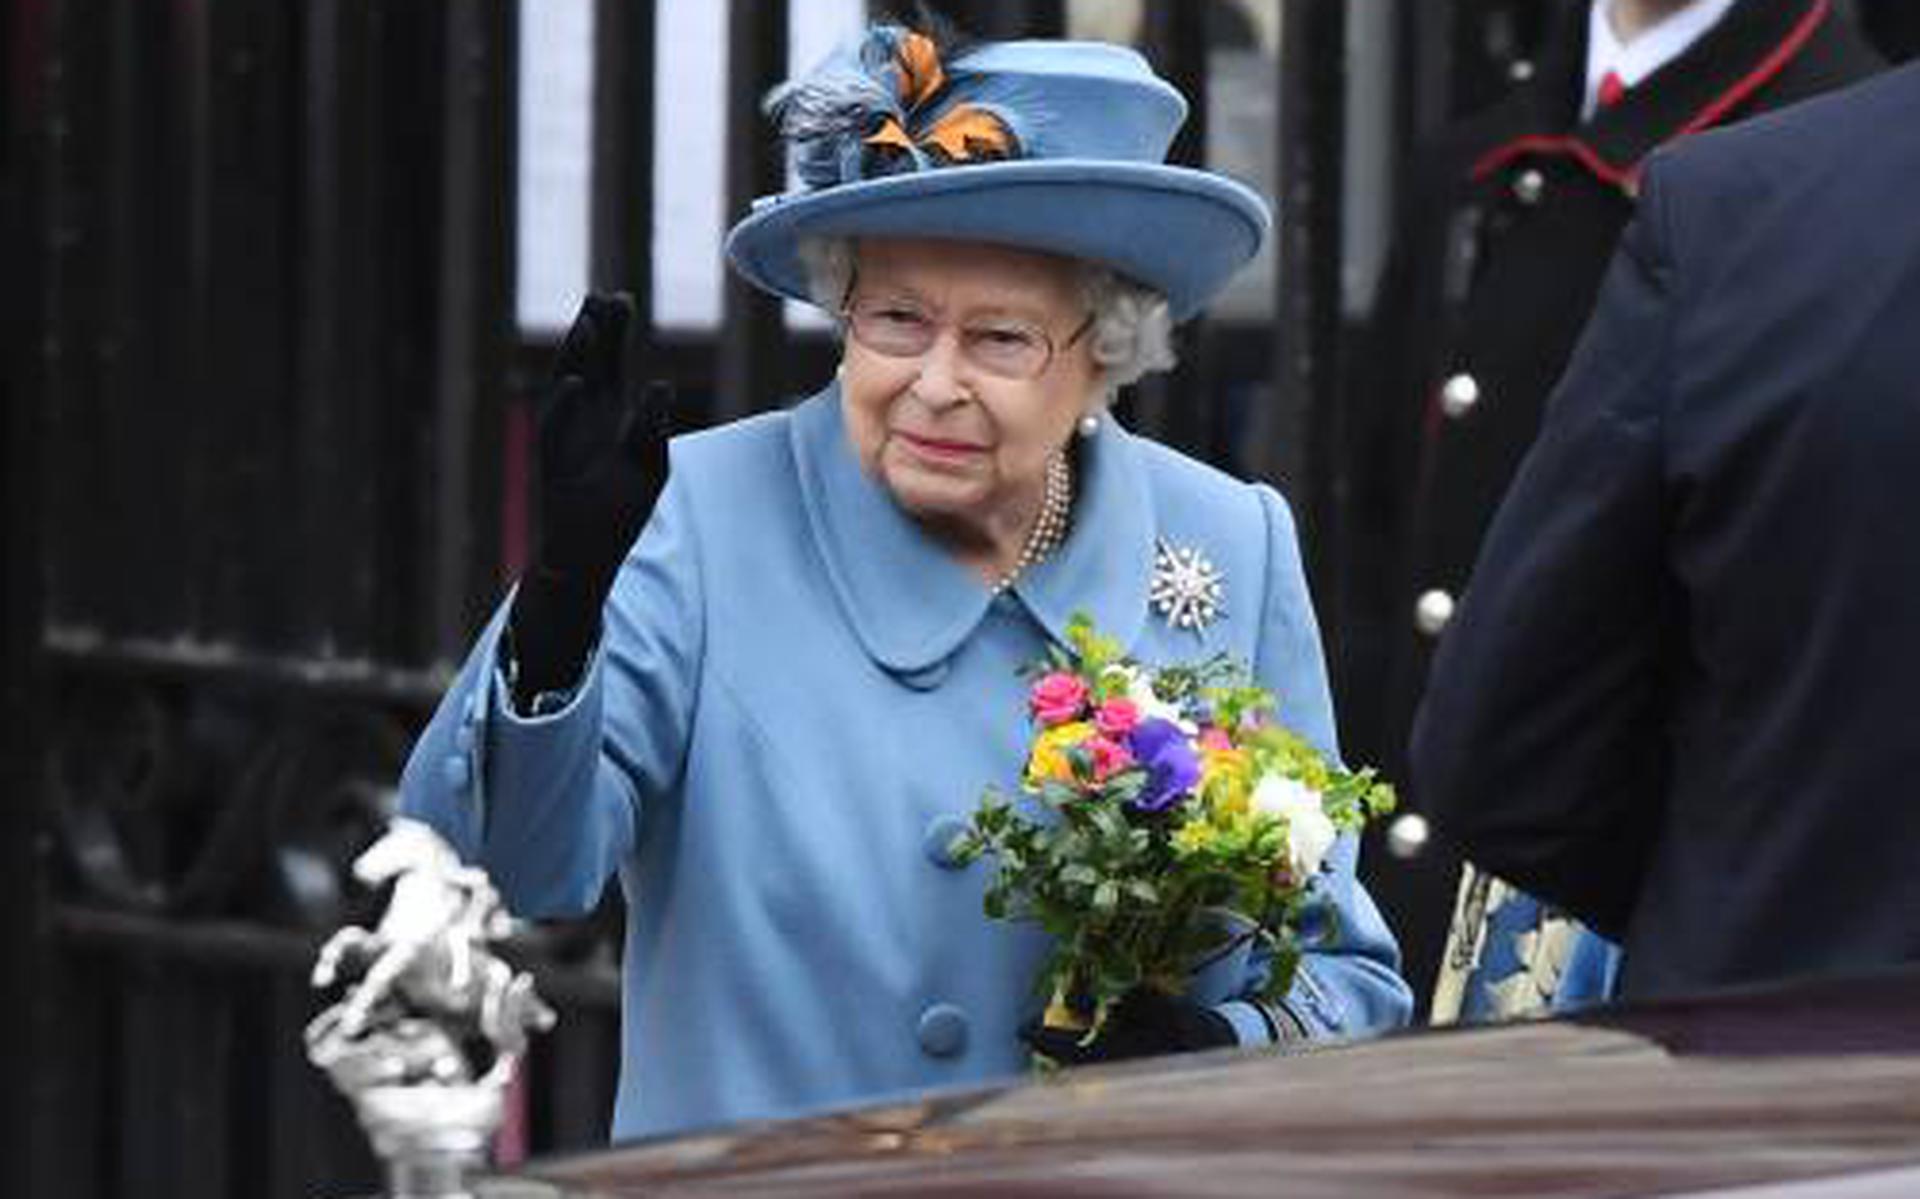 Britse koningin wendt zich tijdens coronacrisis tot volk